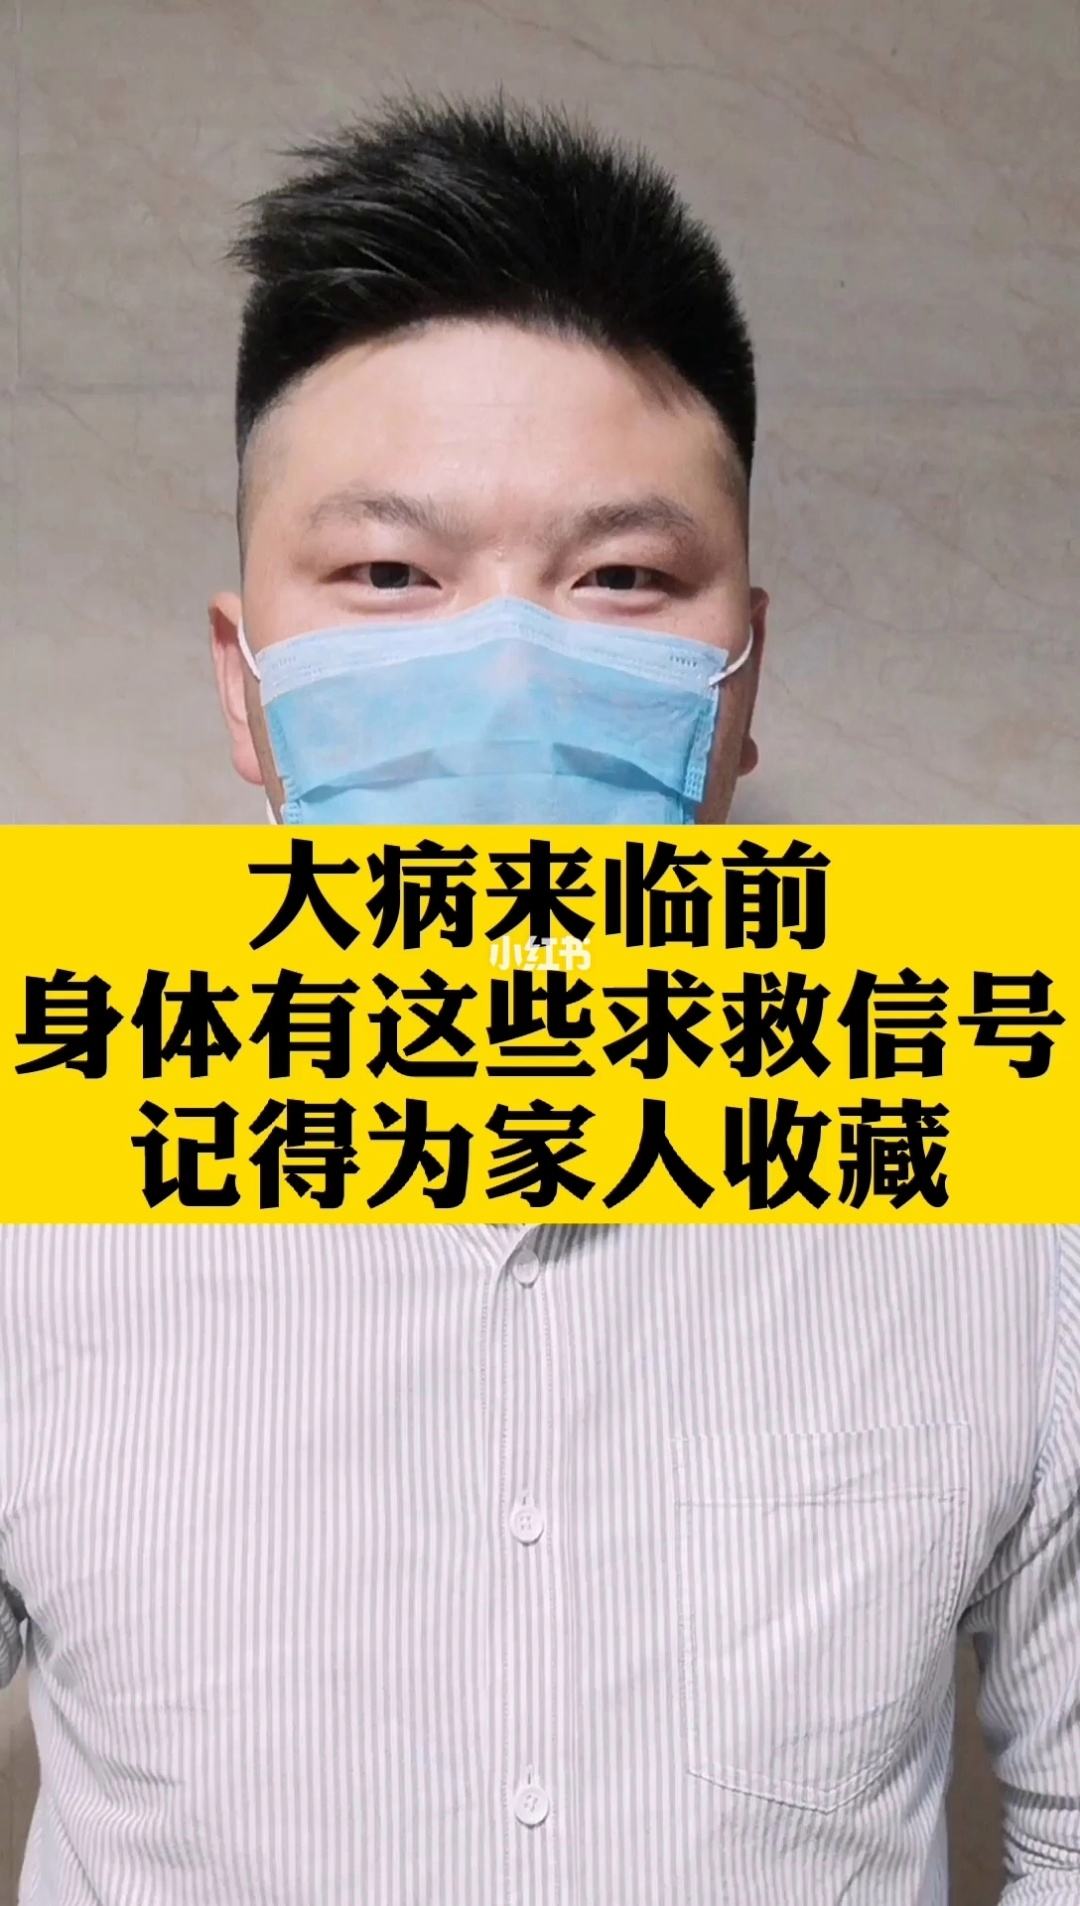 包含北京儿童医院急求黄牛挂号电话的记得收藏；做核磁检查，会对身体有害吗?老实说:没有，但2类人要当心的词条